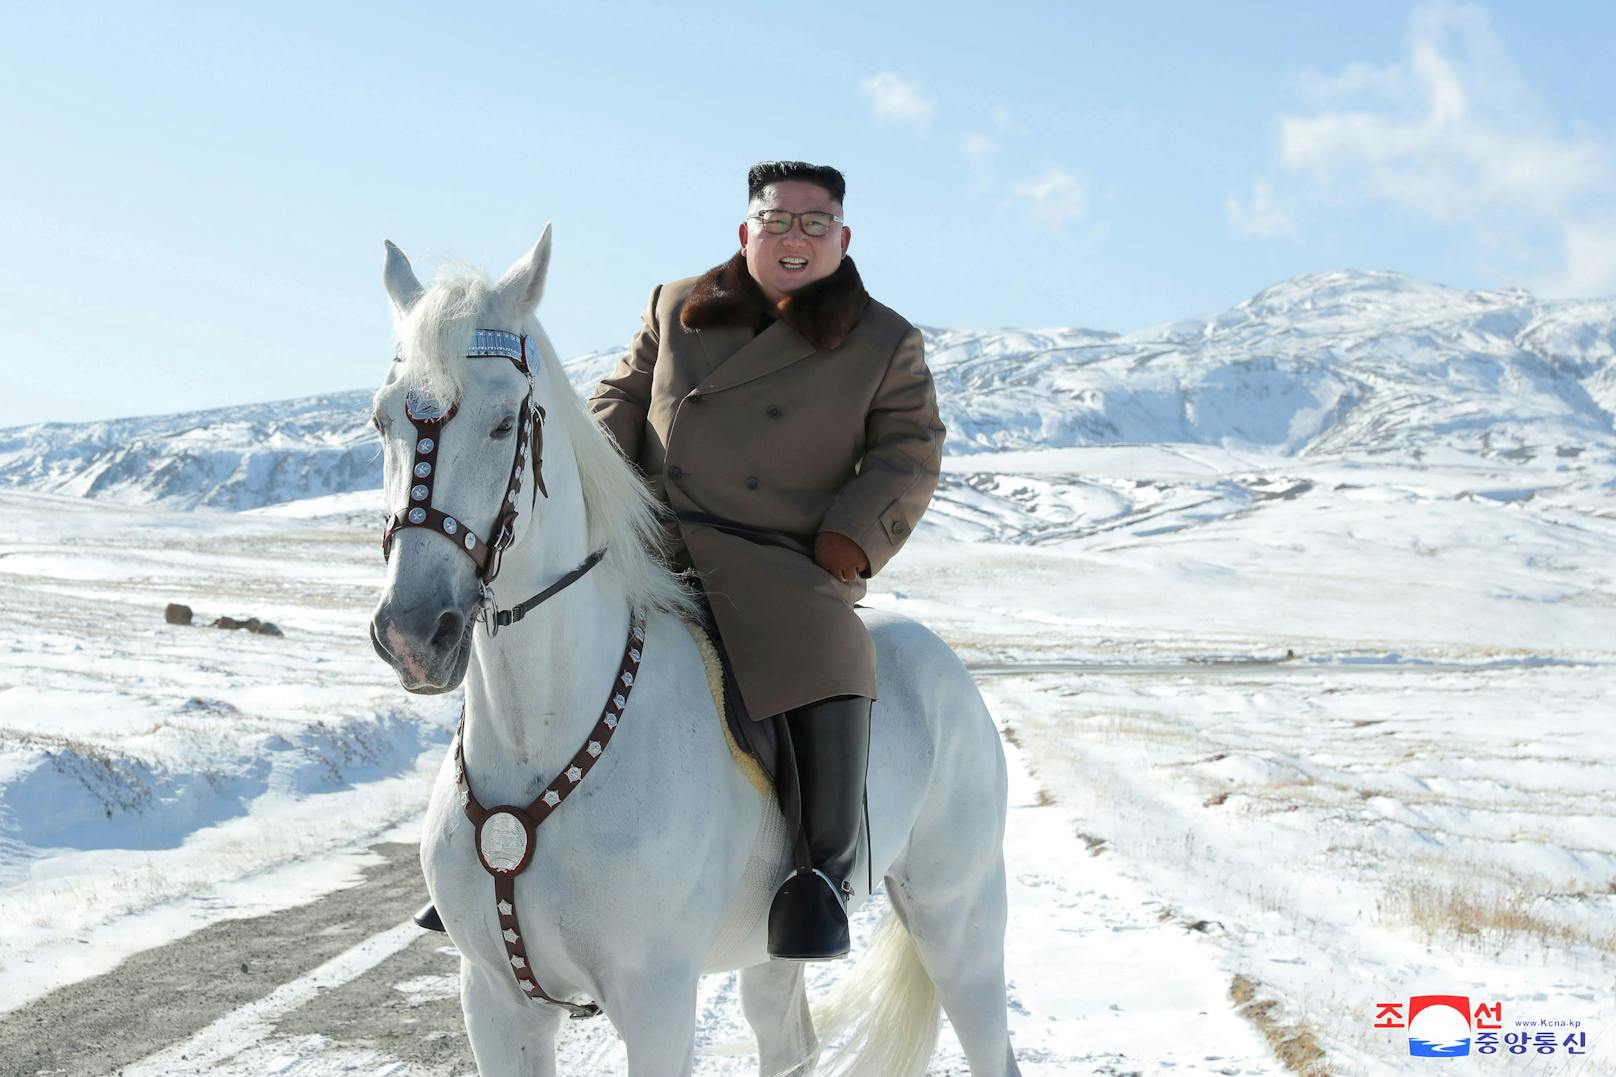 Russland schickt Nordkorea Pferde für Munition